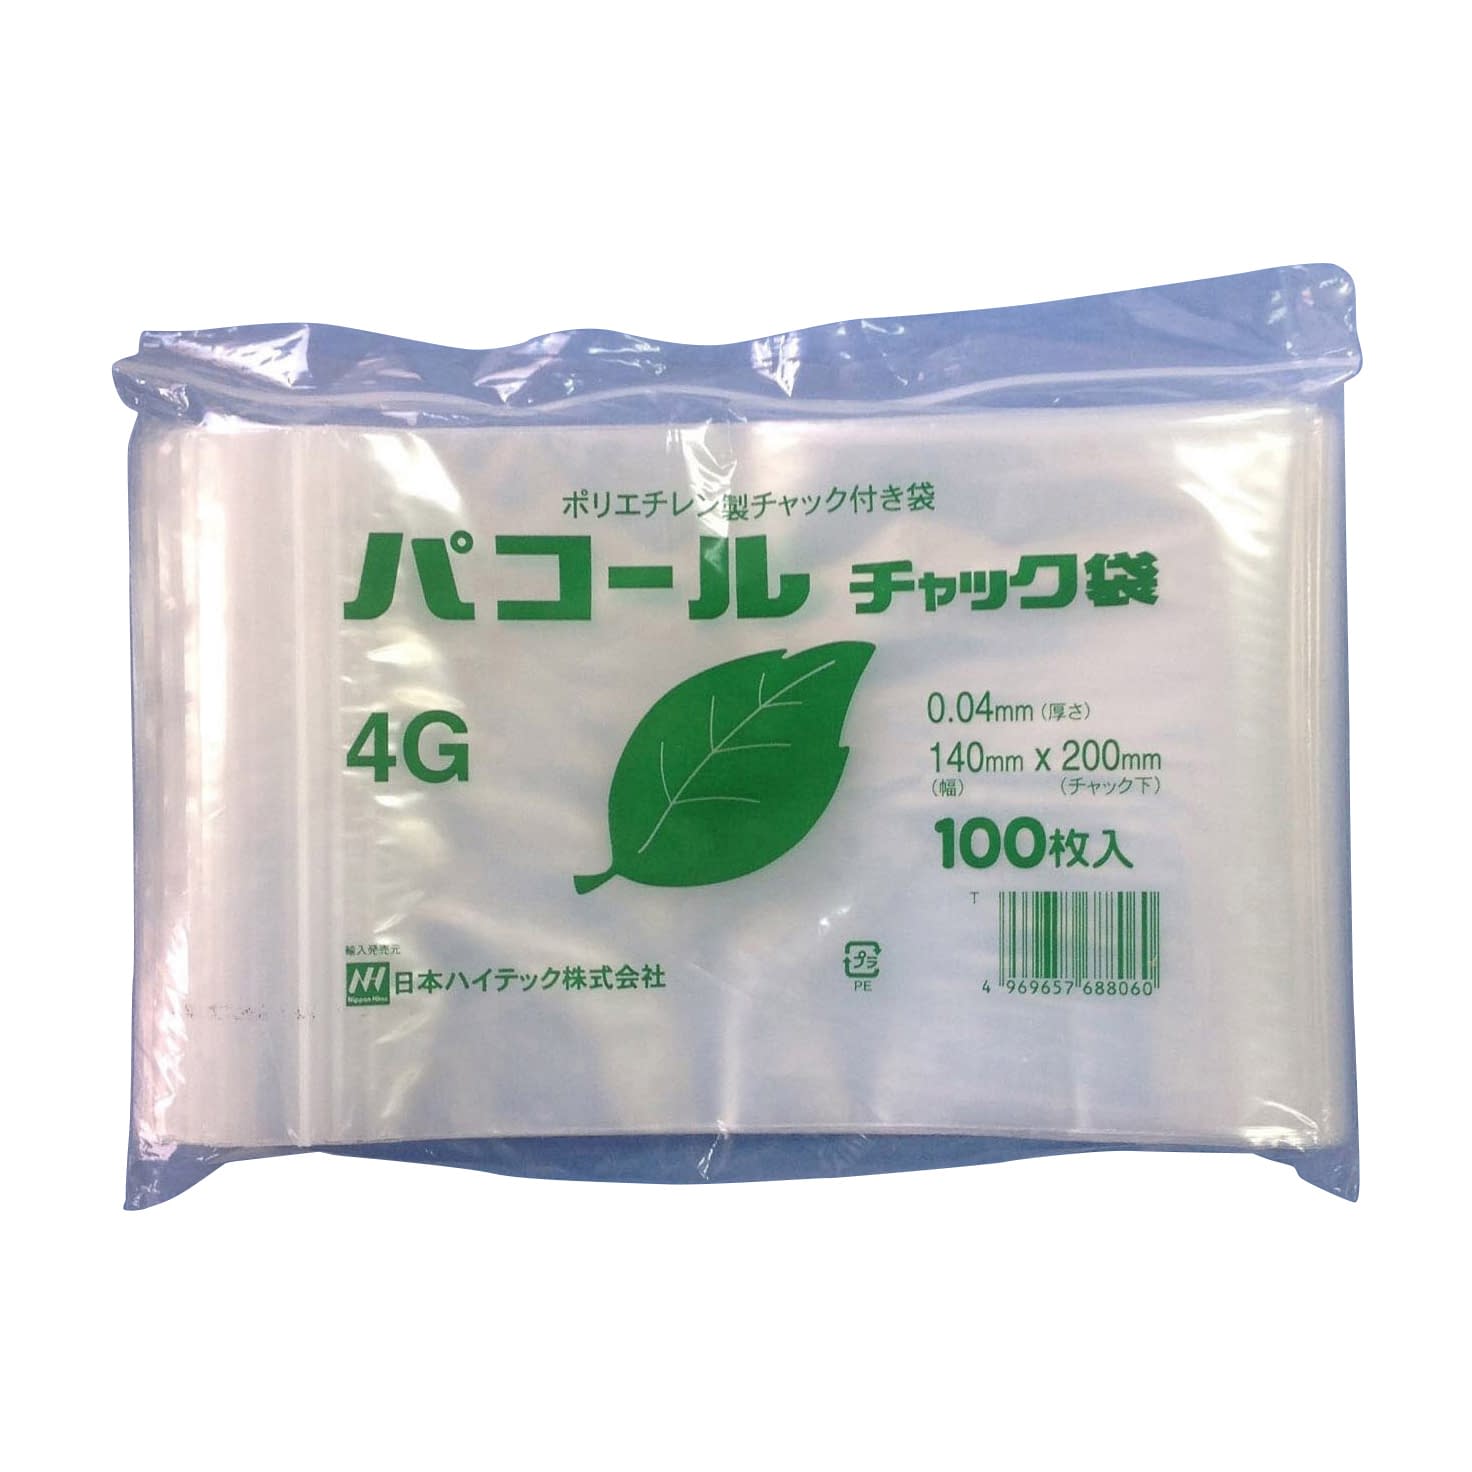 (24-3926-06)パコールチャック袋 4G(100ﾏｲX50ﾌｸﾛ) ﾊﾟｺｰﾙﾁｬｯｸﾌﾞｸﾛ【1箱単位】【2019年カタログ商品】